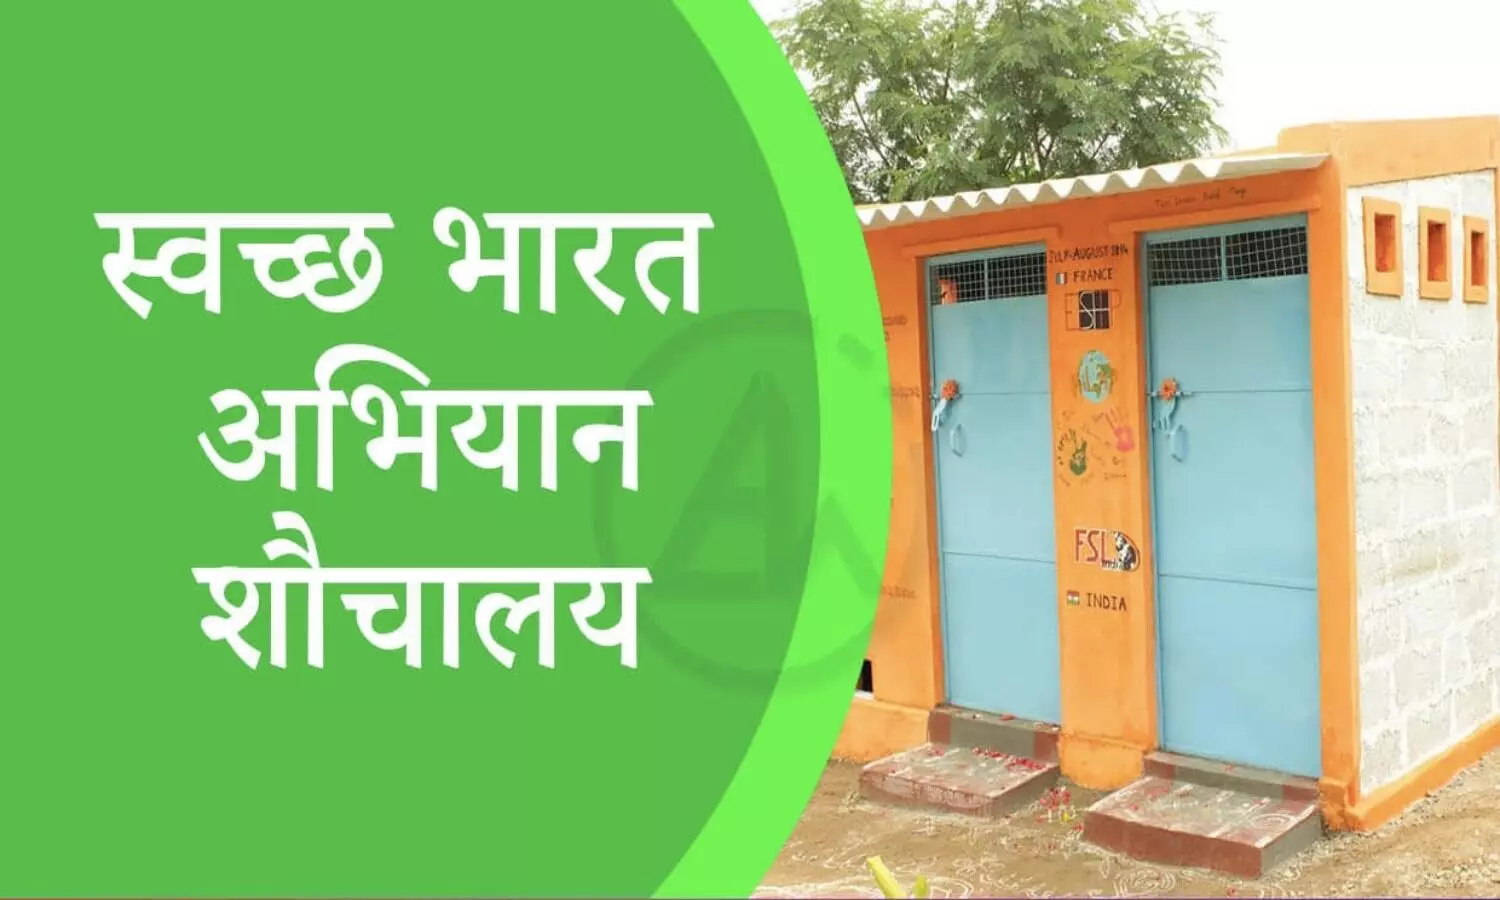 स्वच्छ भारत मिशन से निर्मित शौचालय की फोटों